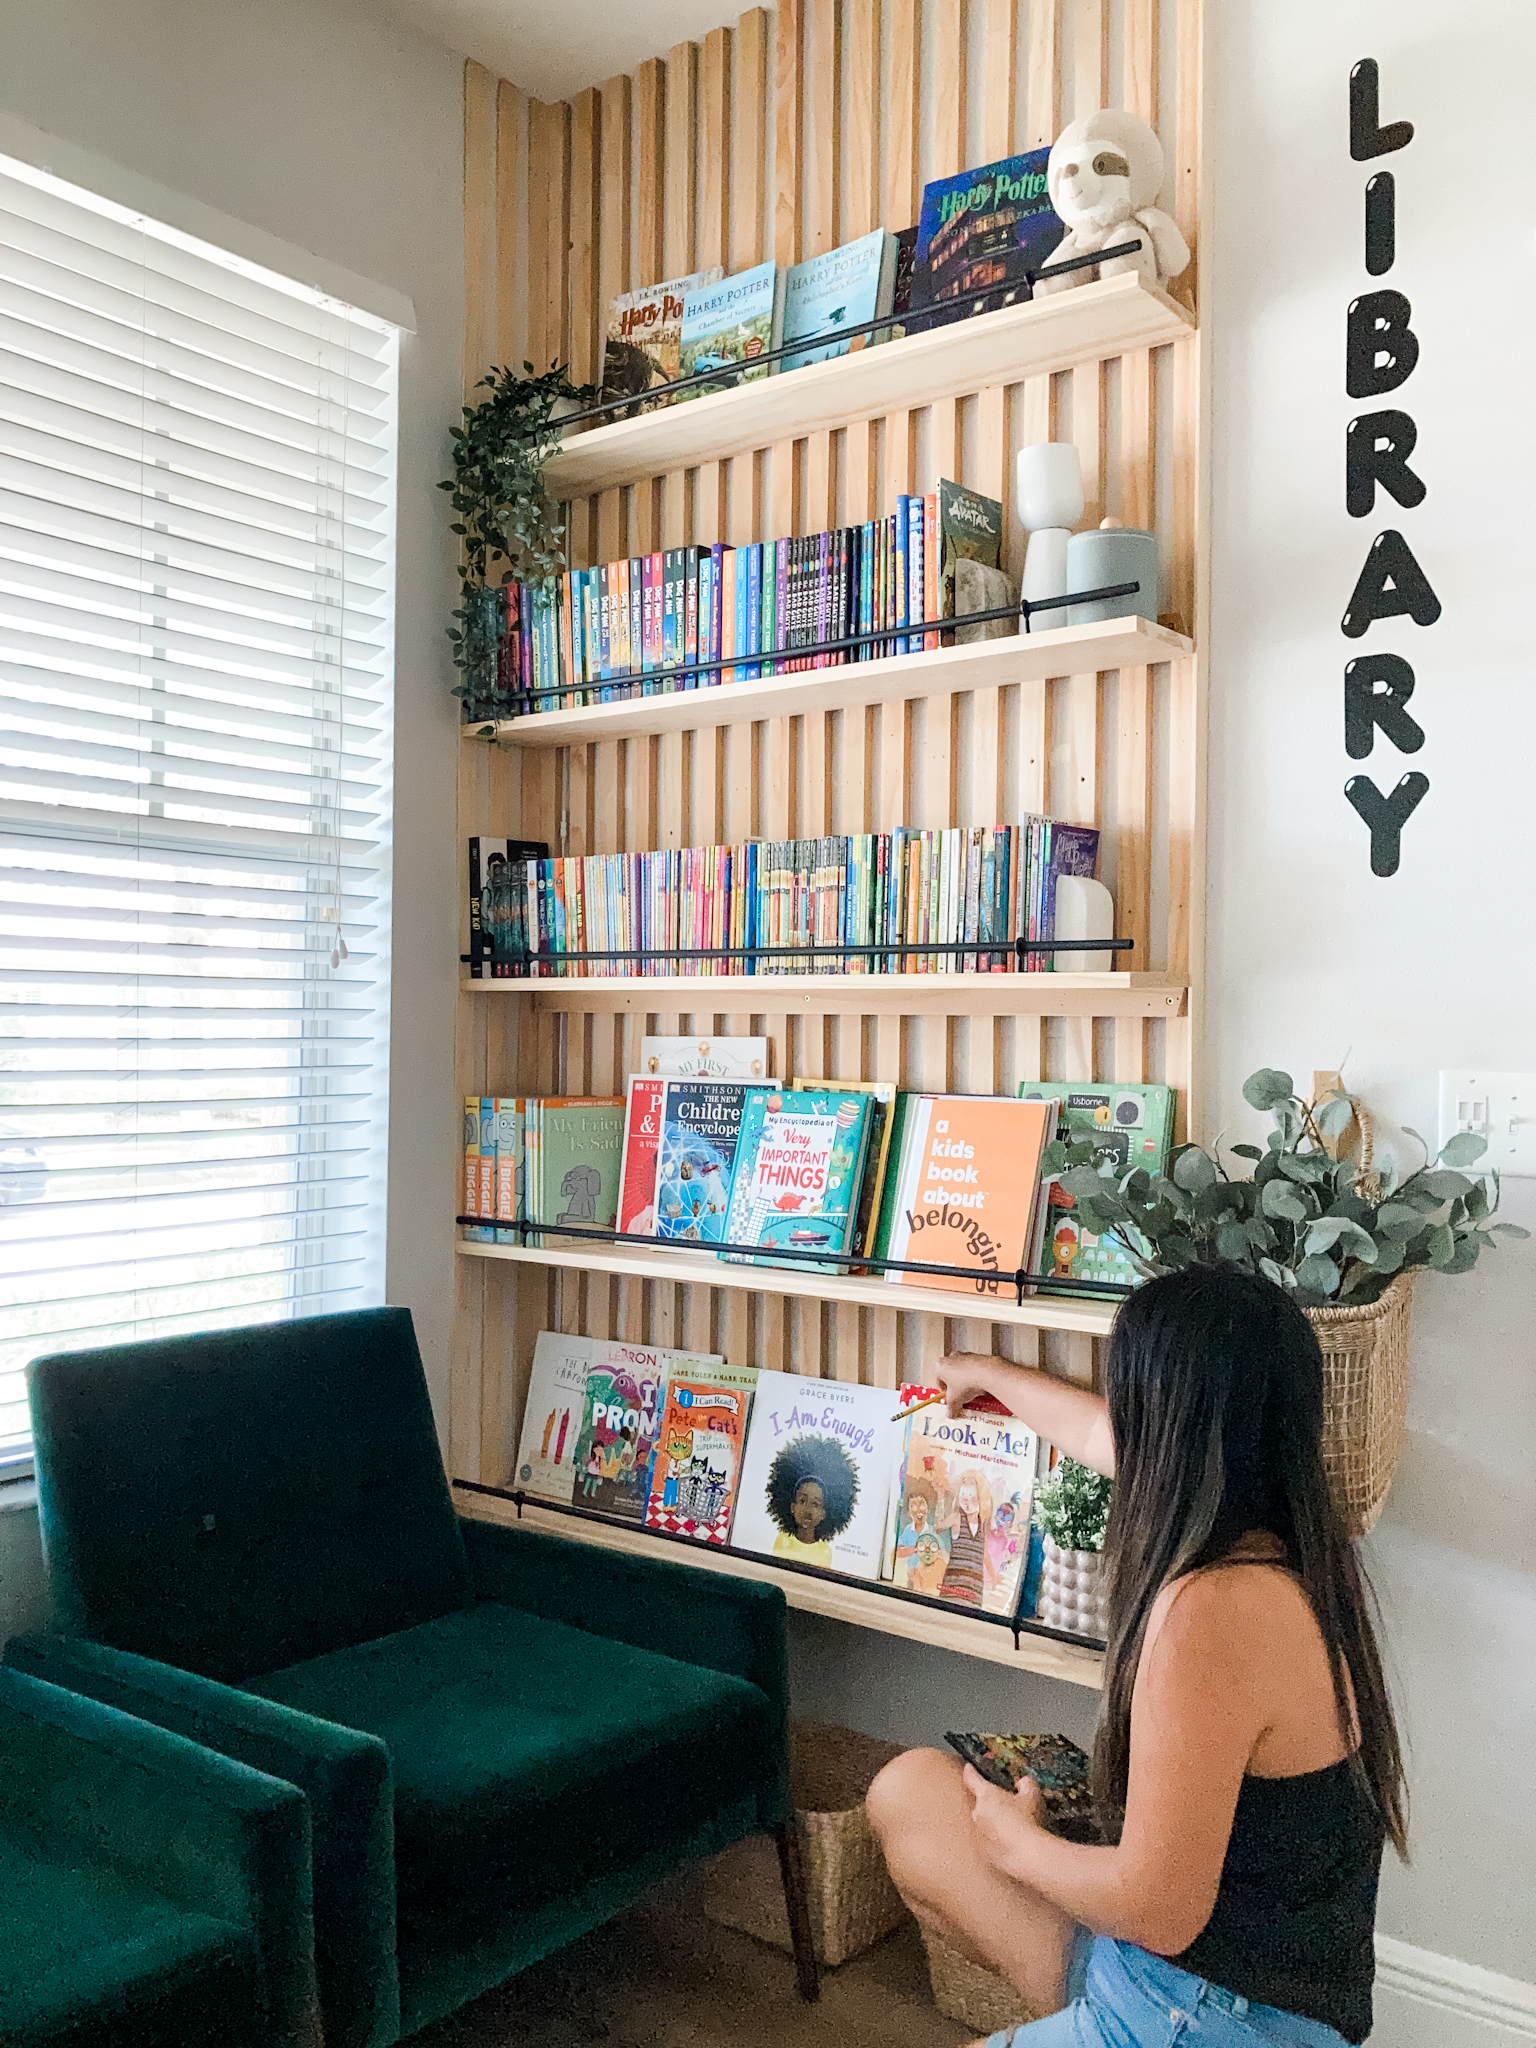 Family Room Built-In - Installing The Top or Header  Built in wall  shelves, Bookshelves diy, Built in shelves living room